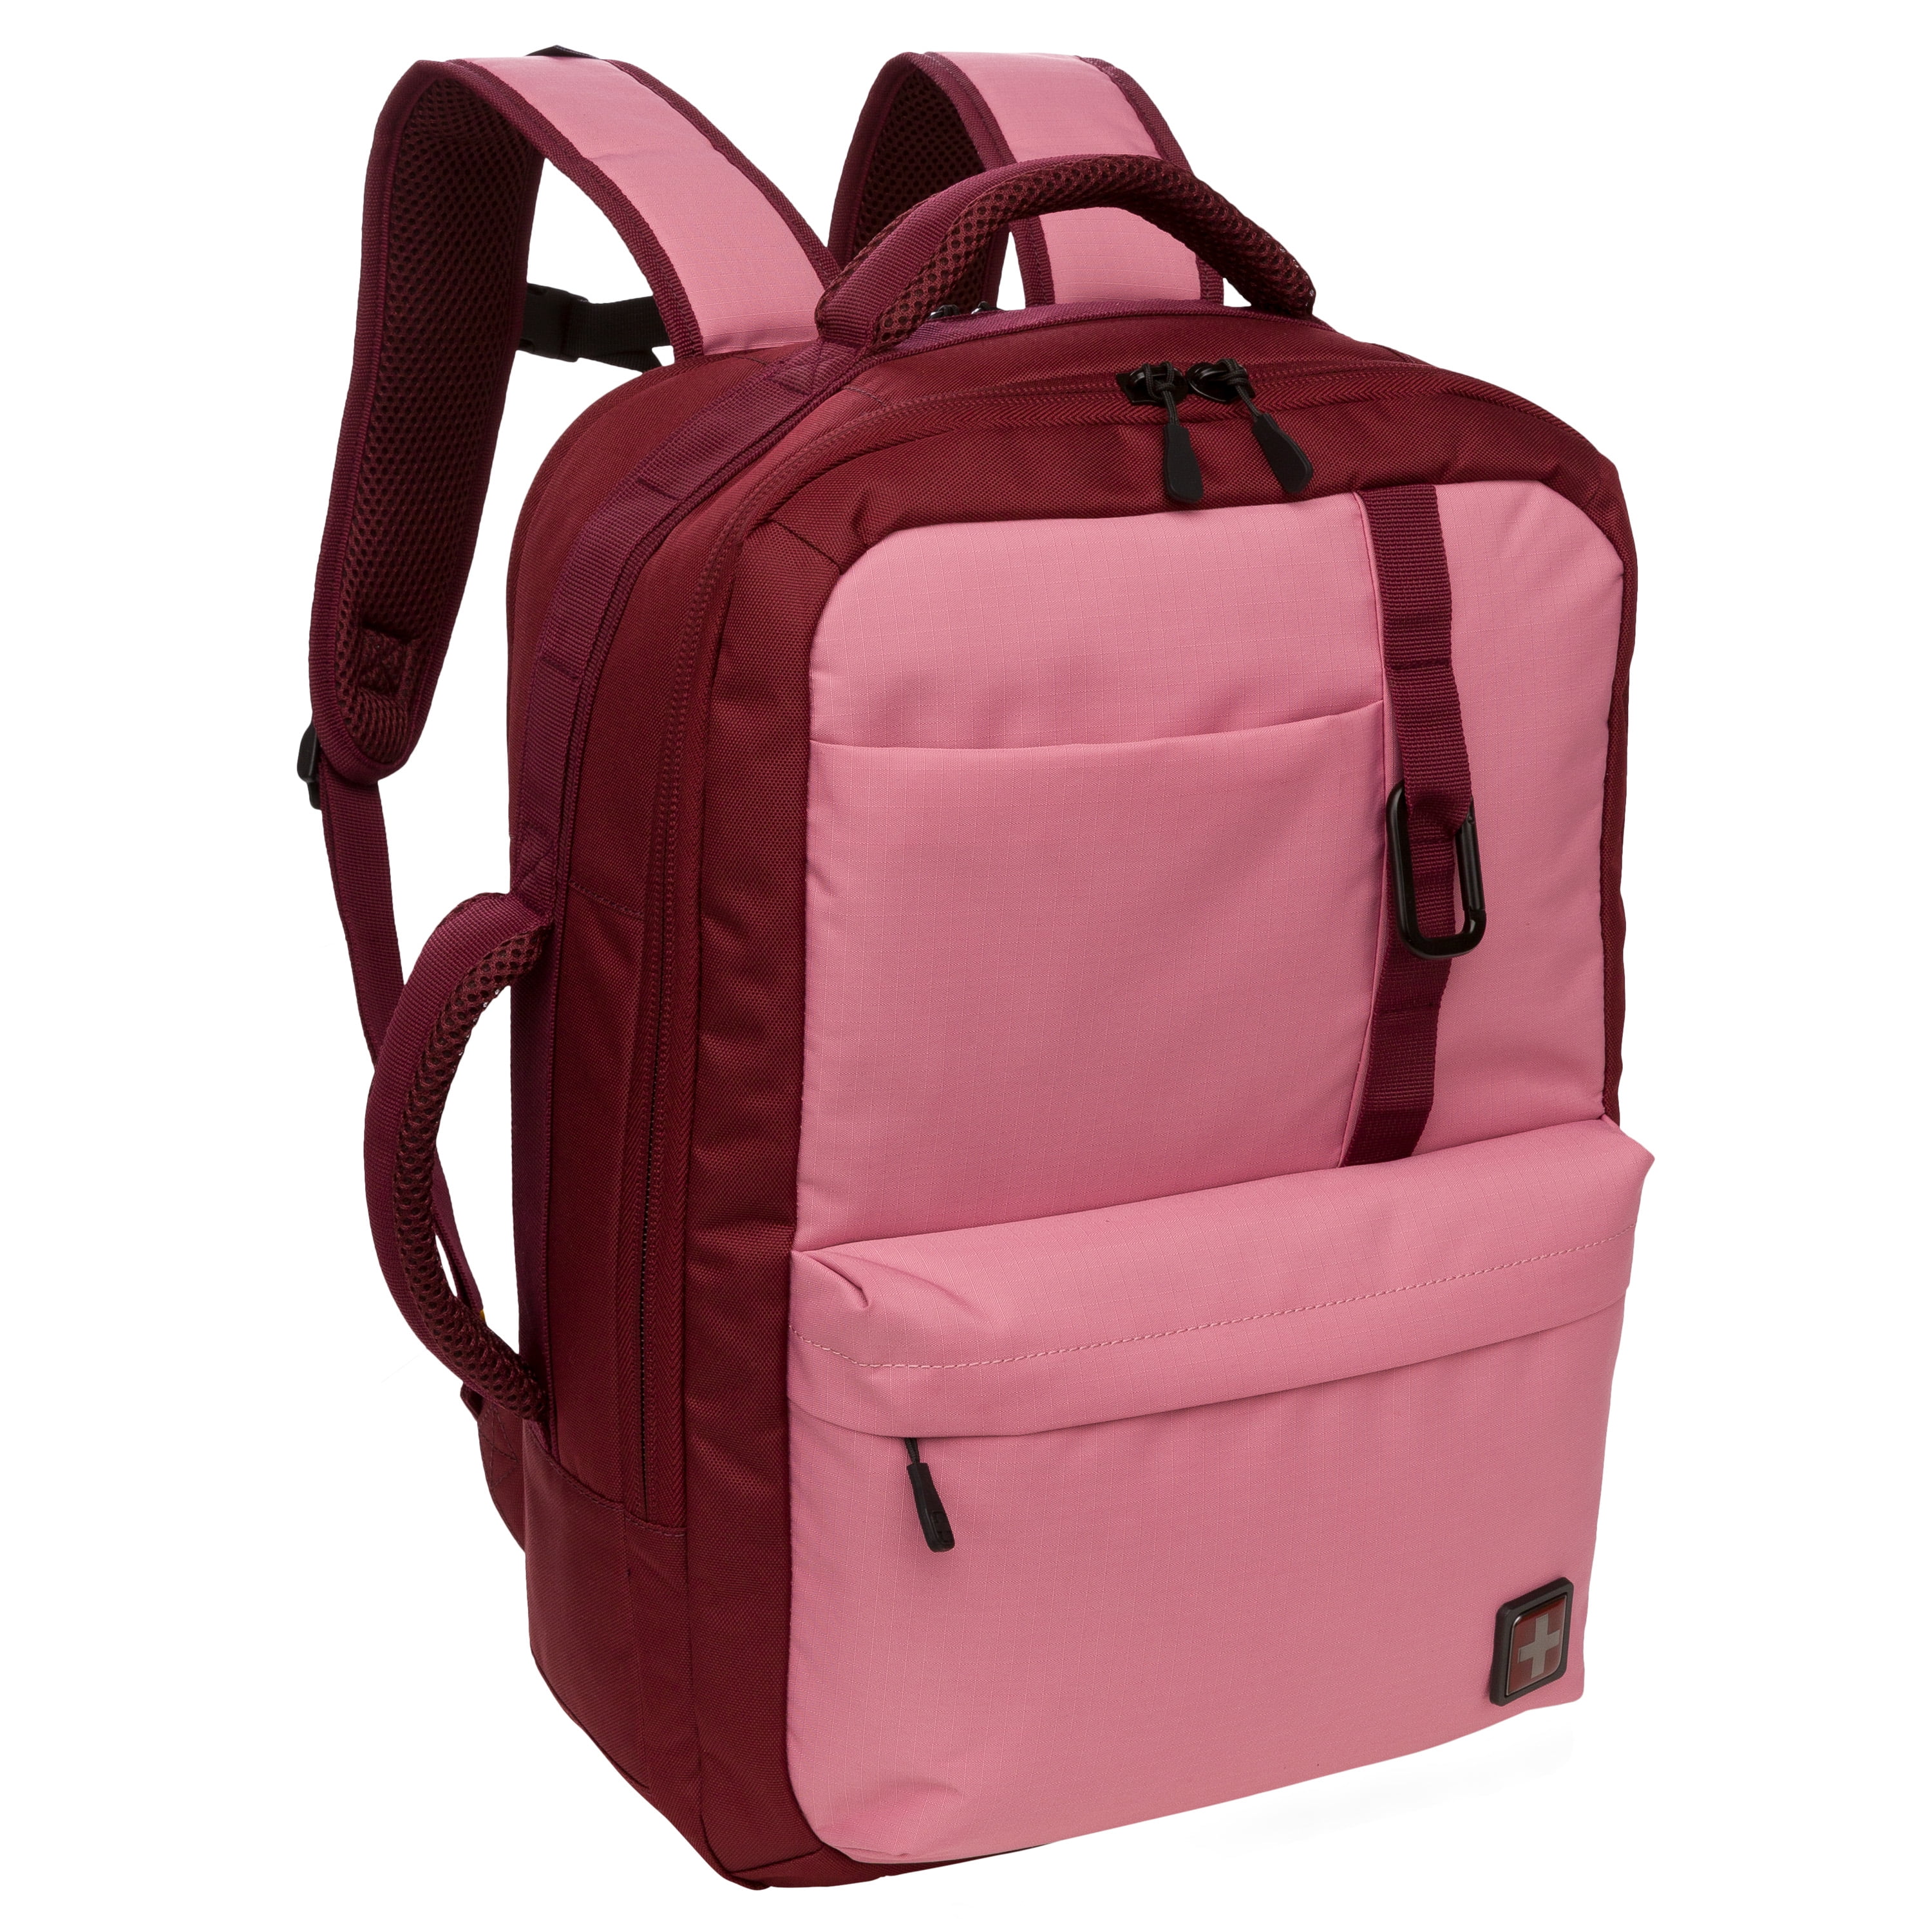 Swiss Tech Interlaken 17 Ltr Rose Pink Backpack, Unisex - Walmart.com